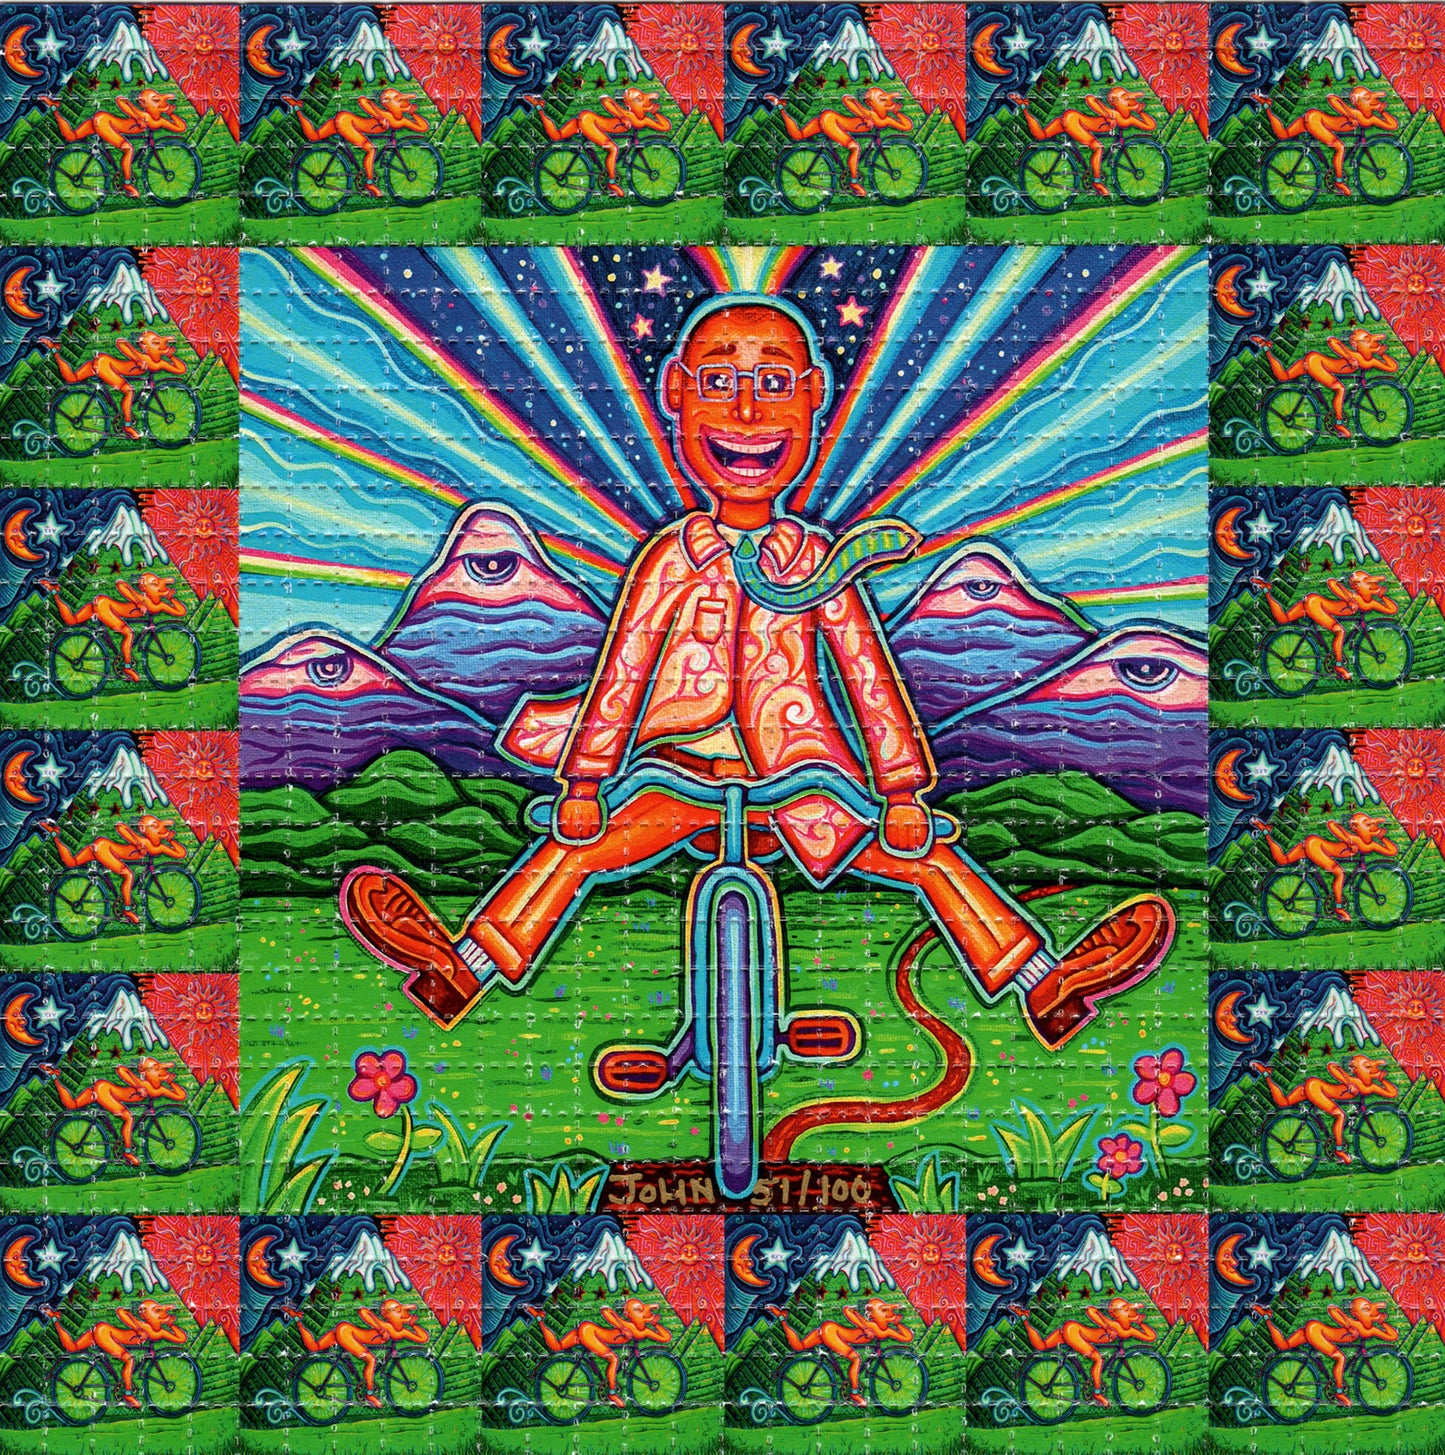 Albert Hofman Bike V2 by John Speaker Signed Limited Edition LSD blotter art print